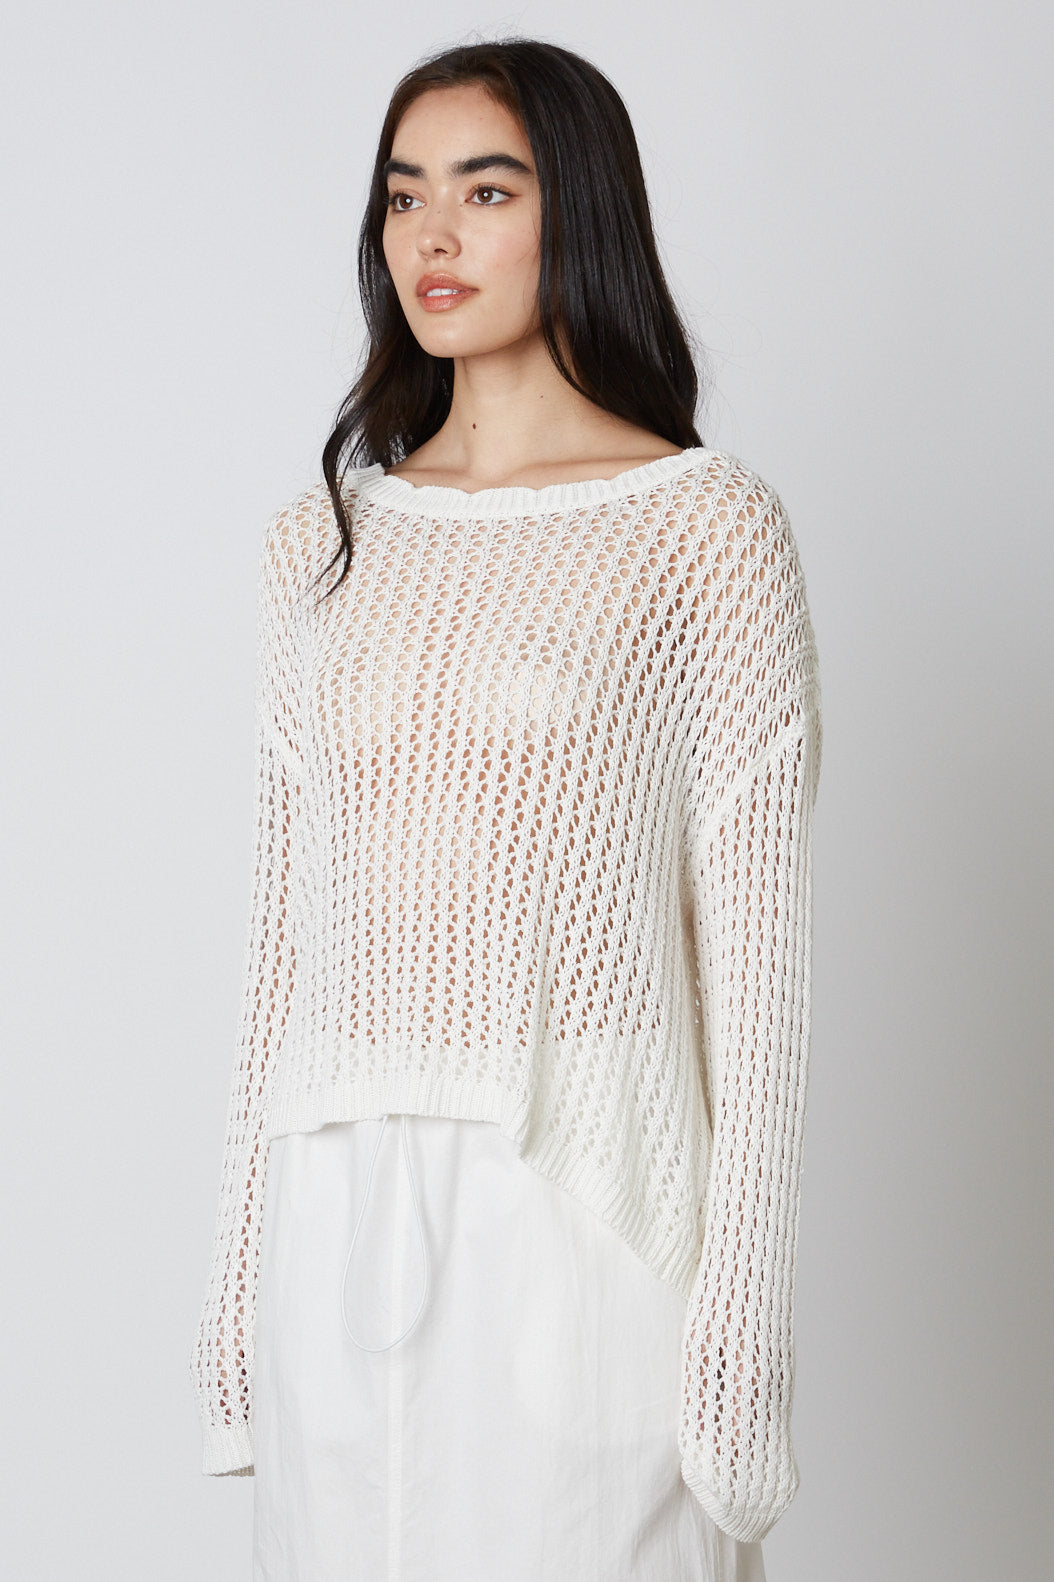 Sosana - Long Sleeve Crochet Open-Knit Striped Distressed Loose-Fit Sweater